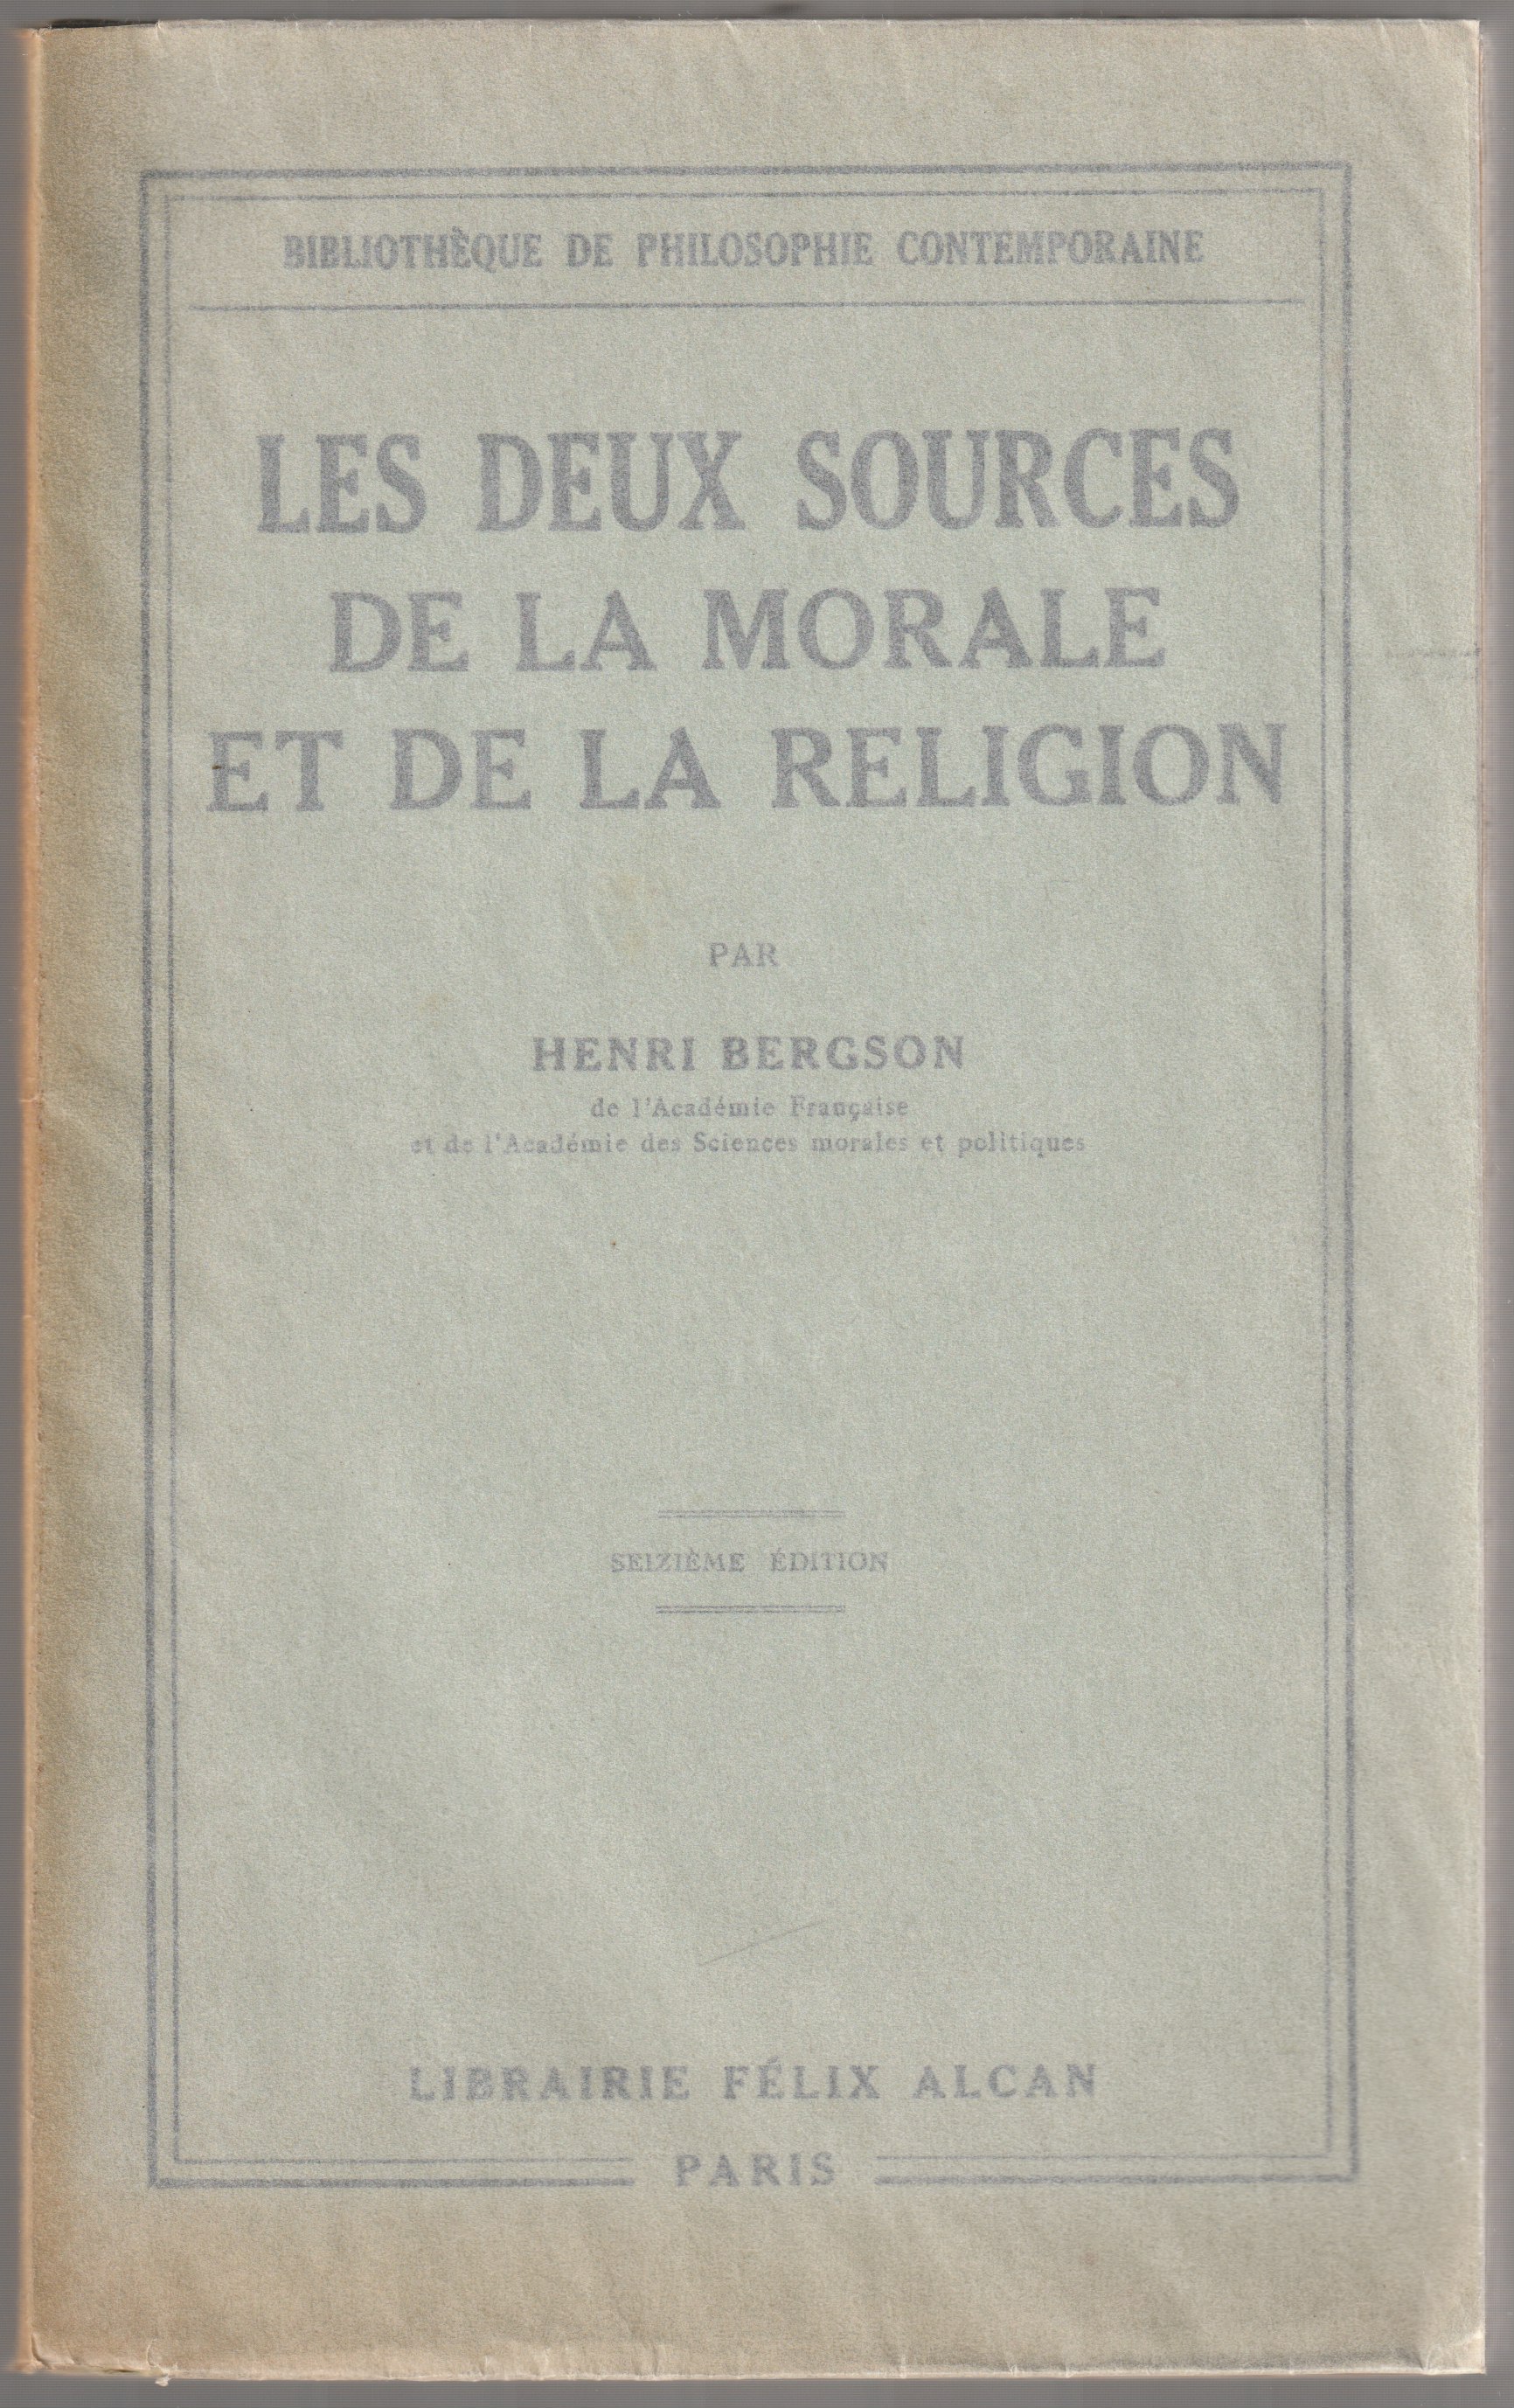 Les deux sources de la morale et de la religion : Par Henri Bergson.